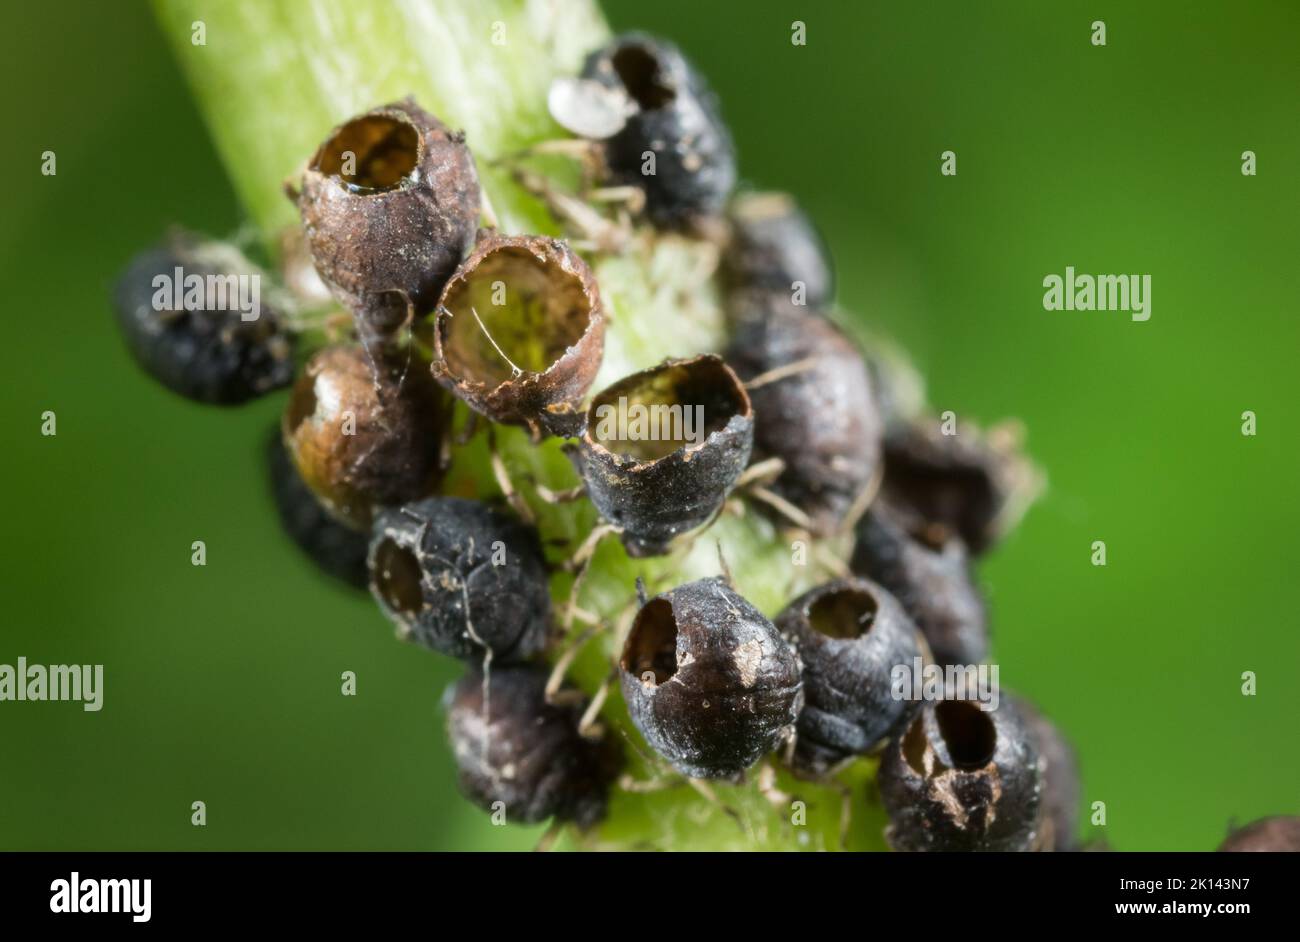 Apid parassitoide vittime di vespa Foto Stock